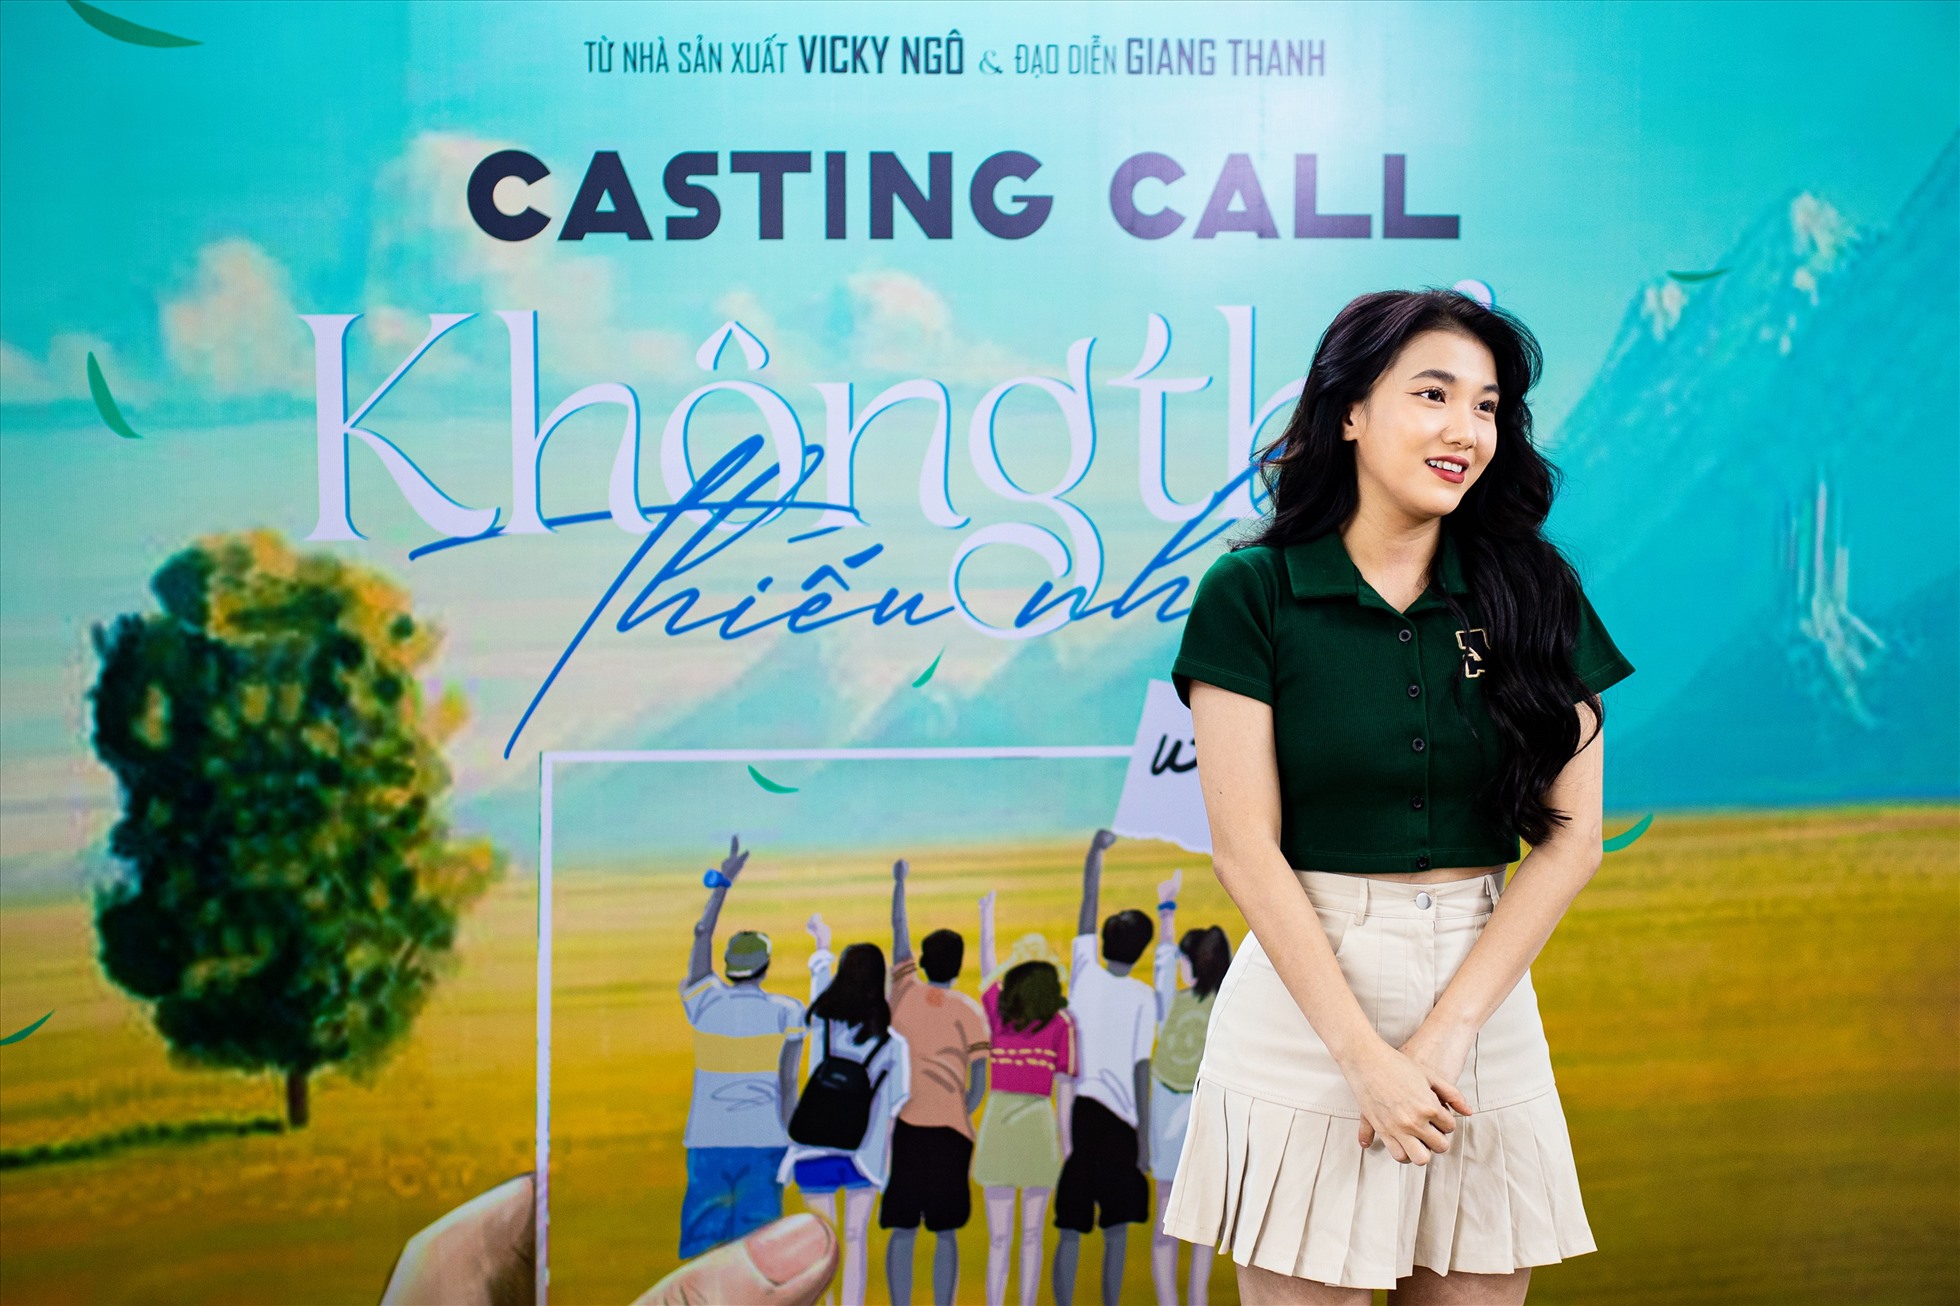 Emma Nhất Khanh tham gia casting. Ảnh: Nhà sản xuất